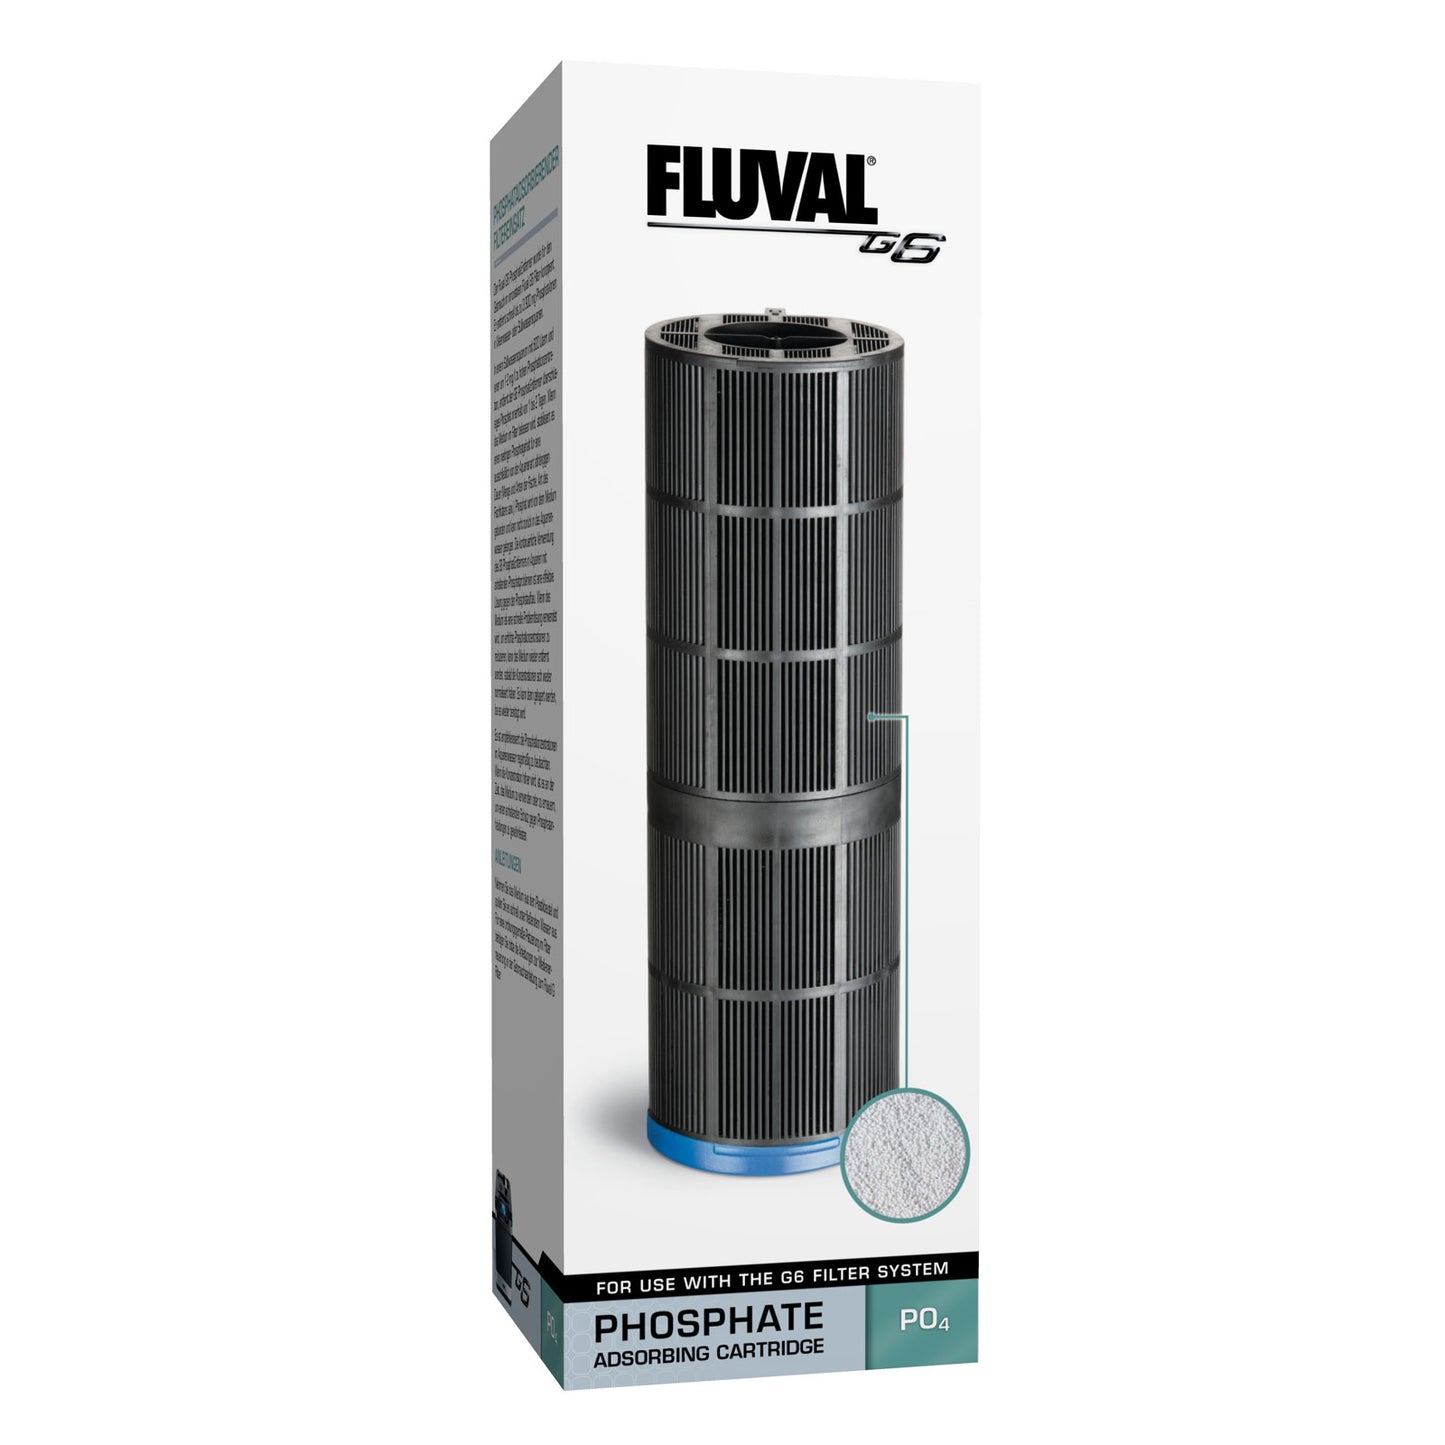 FLUVAL G6 Phosphate Cartridge